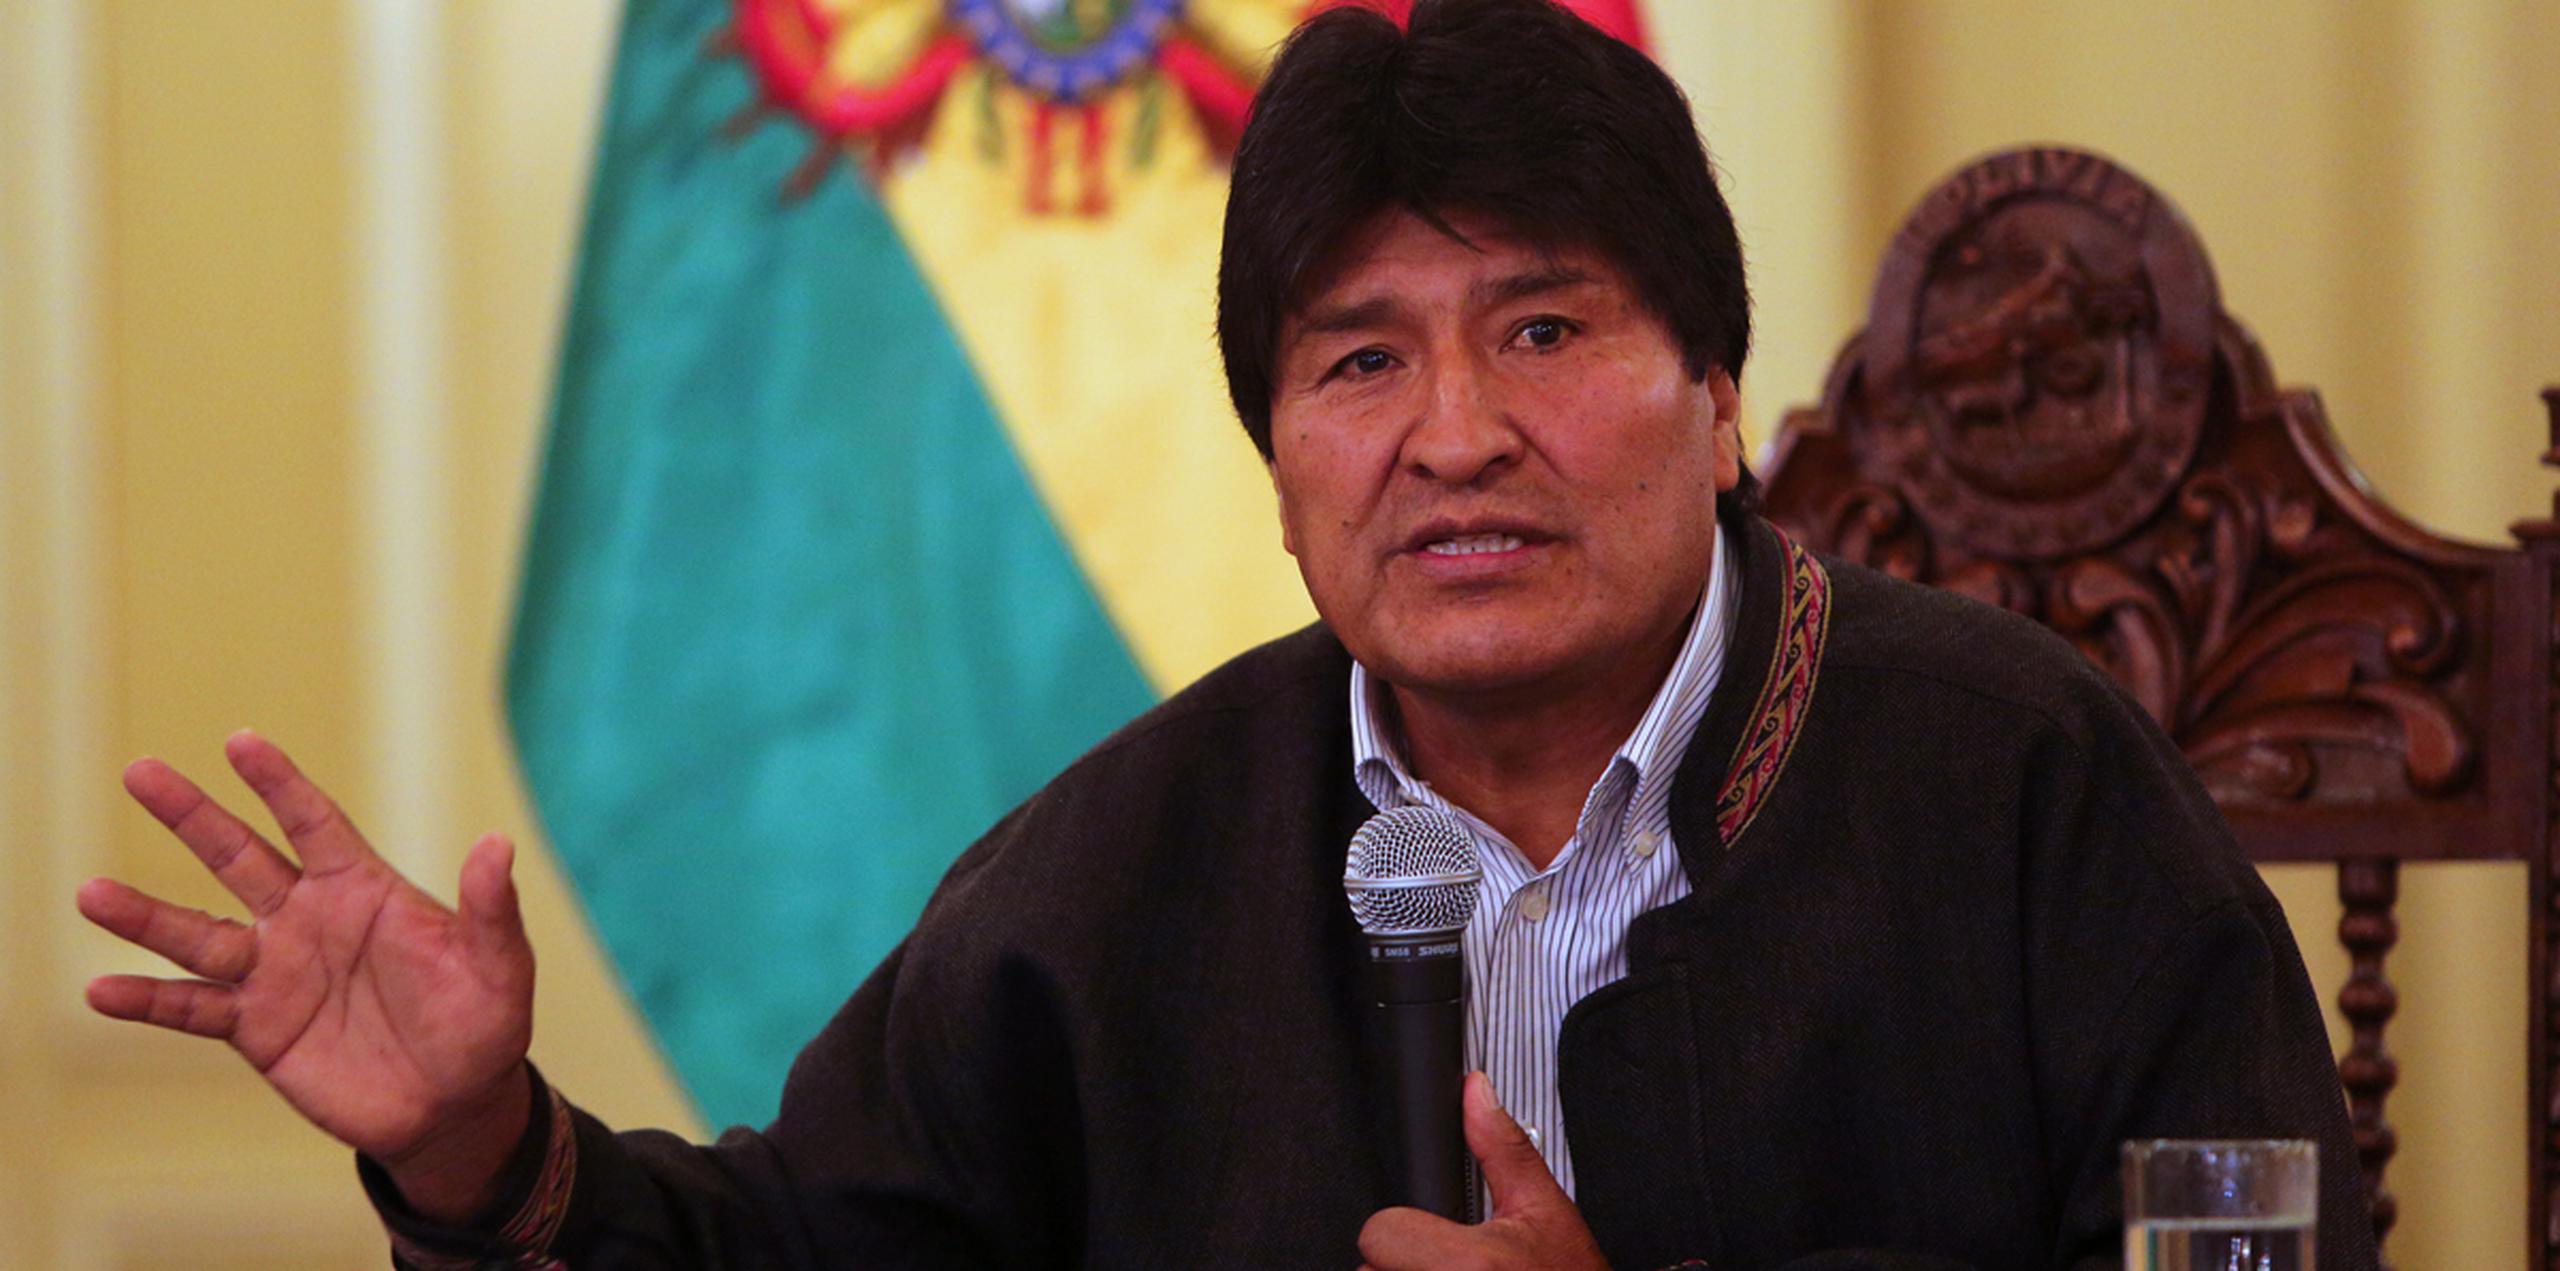 Los seguidores de Morales anunciaron que realizarán marchas desde este jueves en todas las ciudades bolivianas para demostrar su apoyo a su líder. (AP)